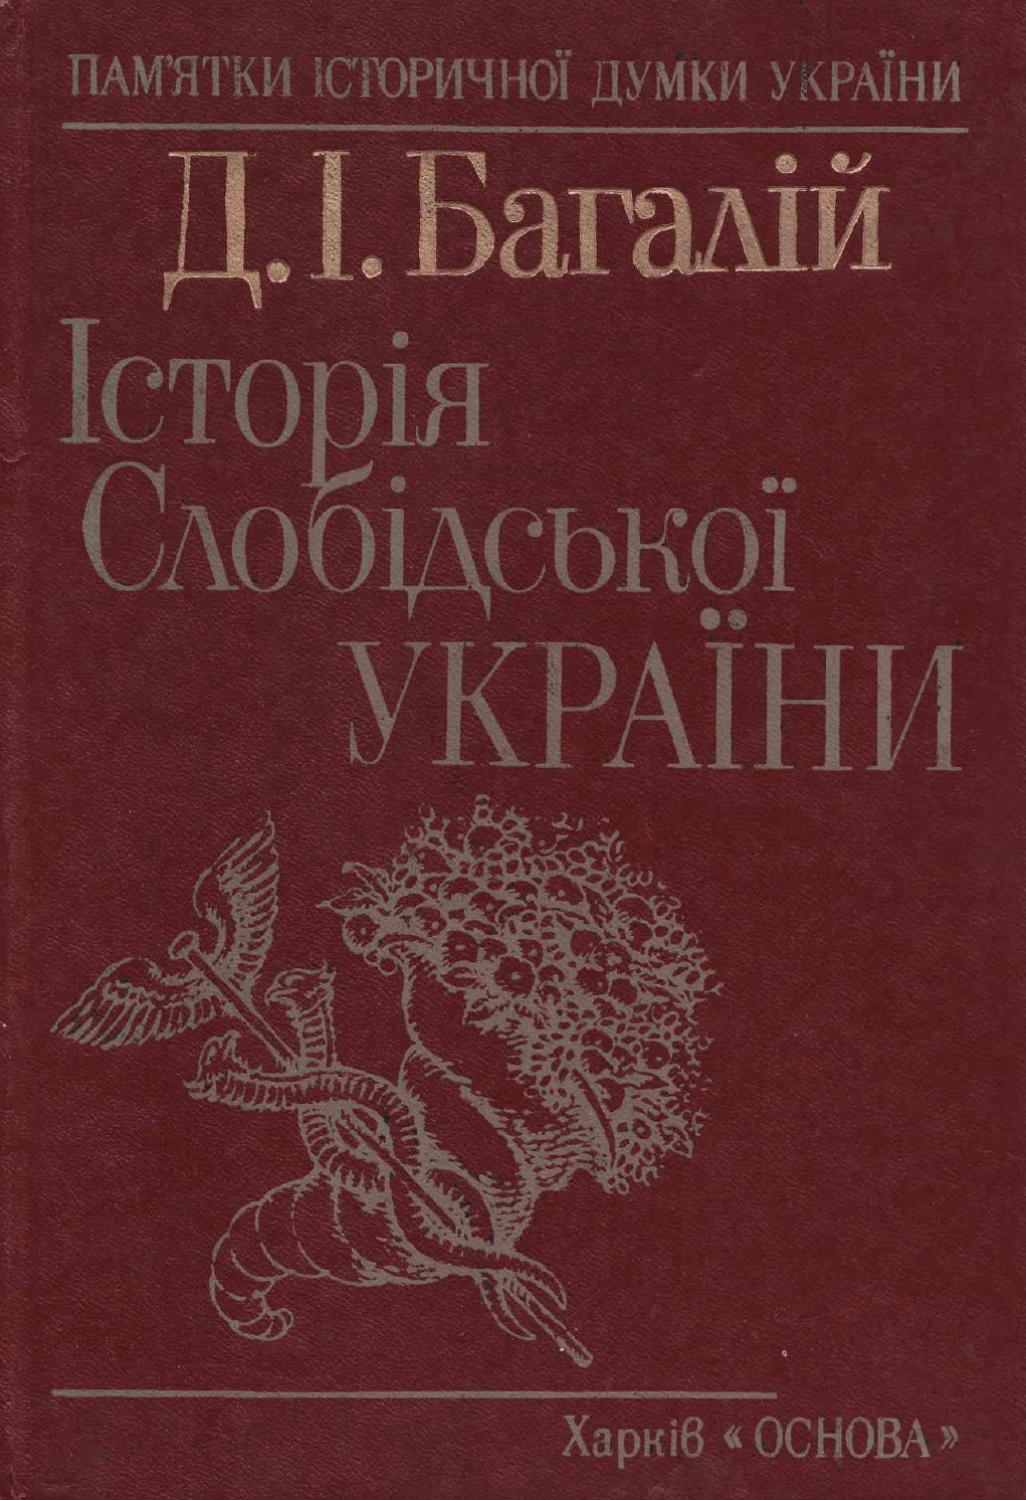 Історія Слобідської України, 1990, Д.І. Багалій